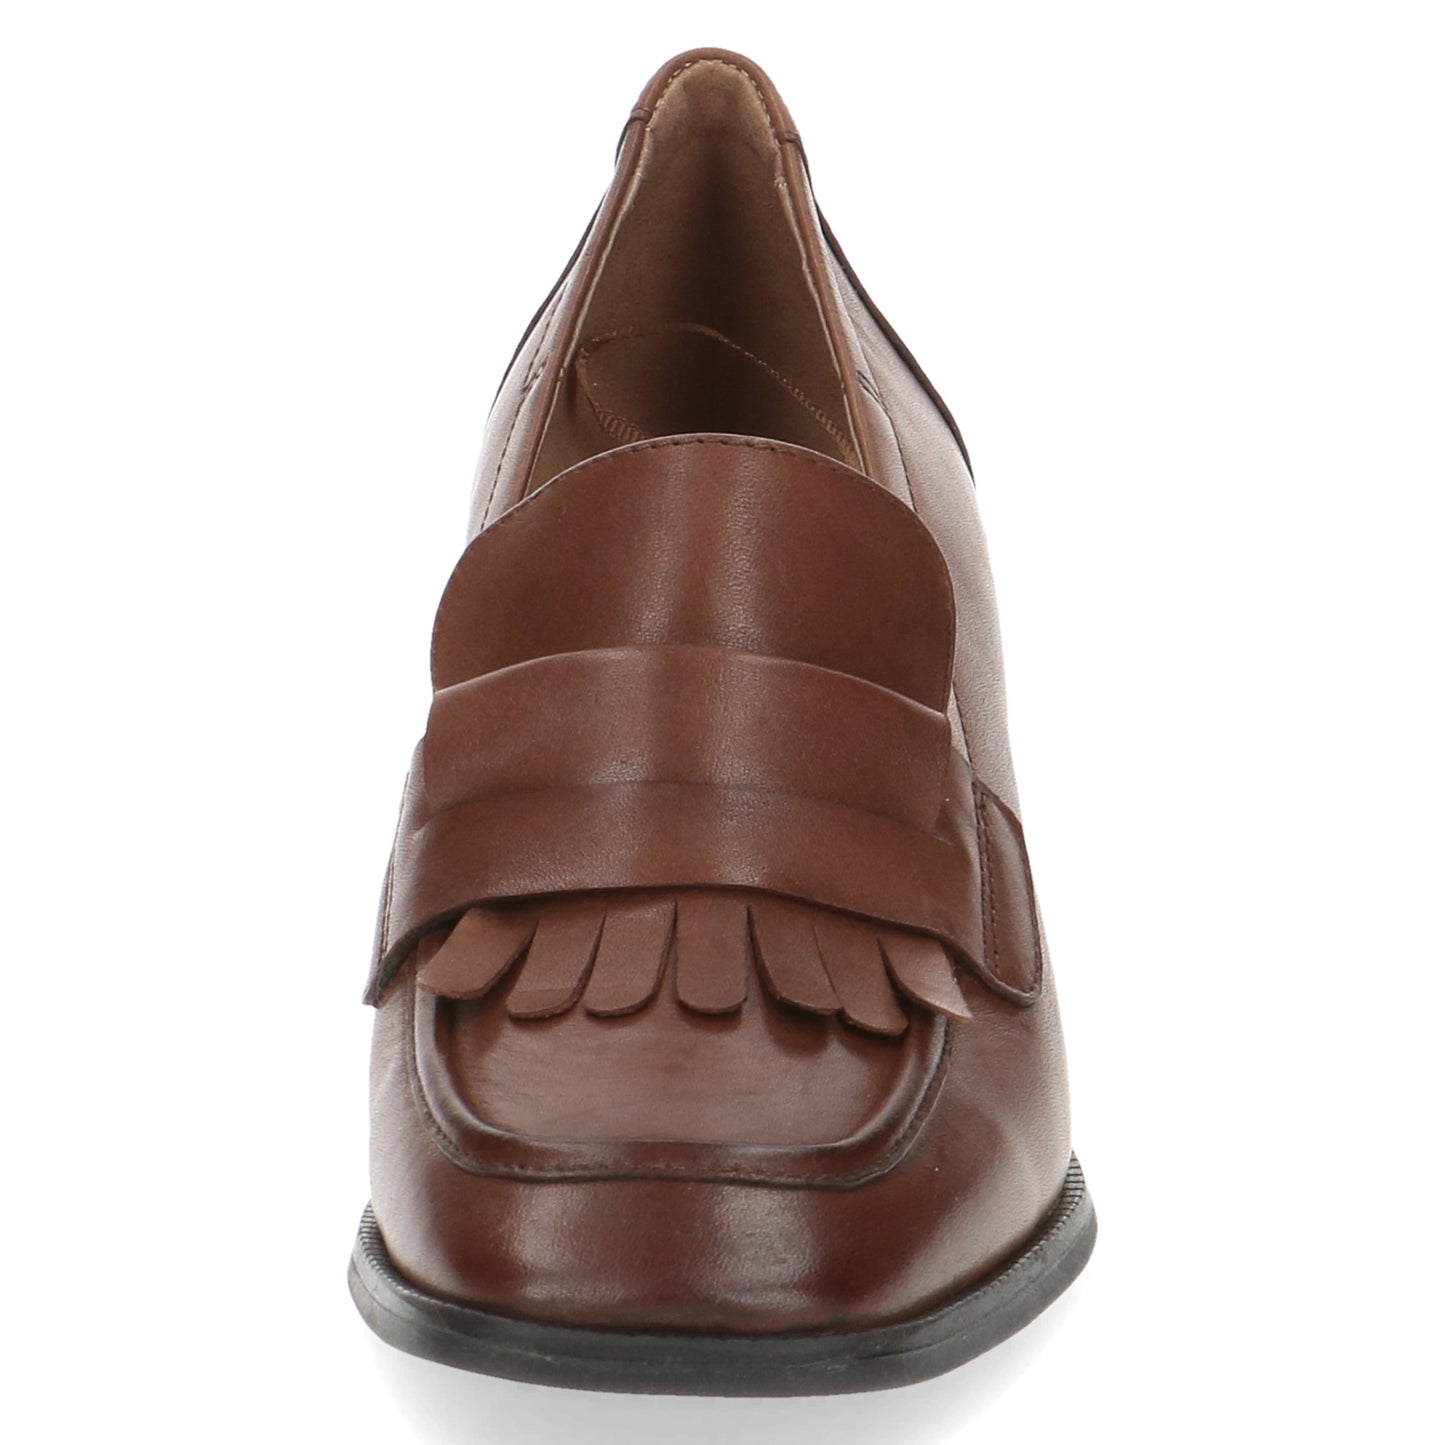 Caprice 9-24303-41 303 Cognac Casual Shoes